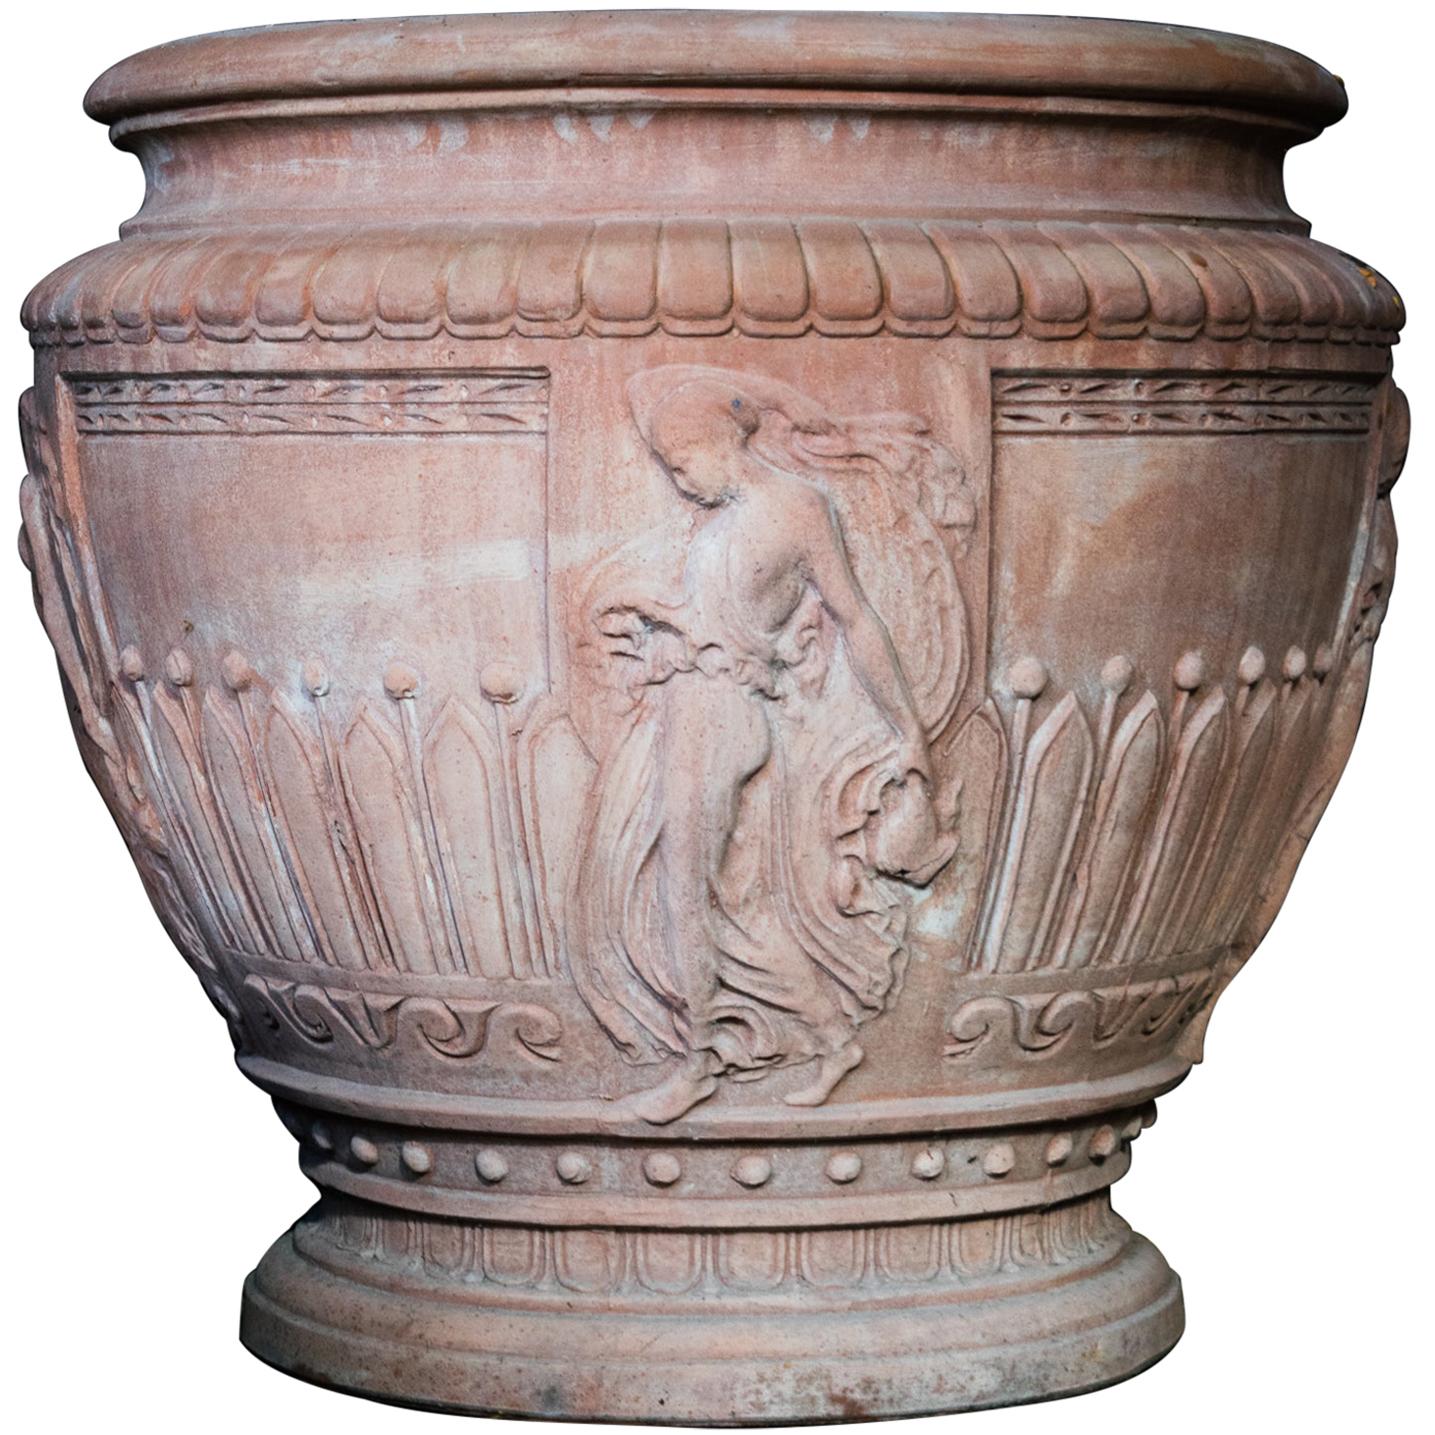 Italian Impruneta Terracotta Vase with Female Figure in Relief